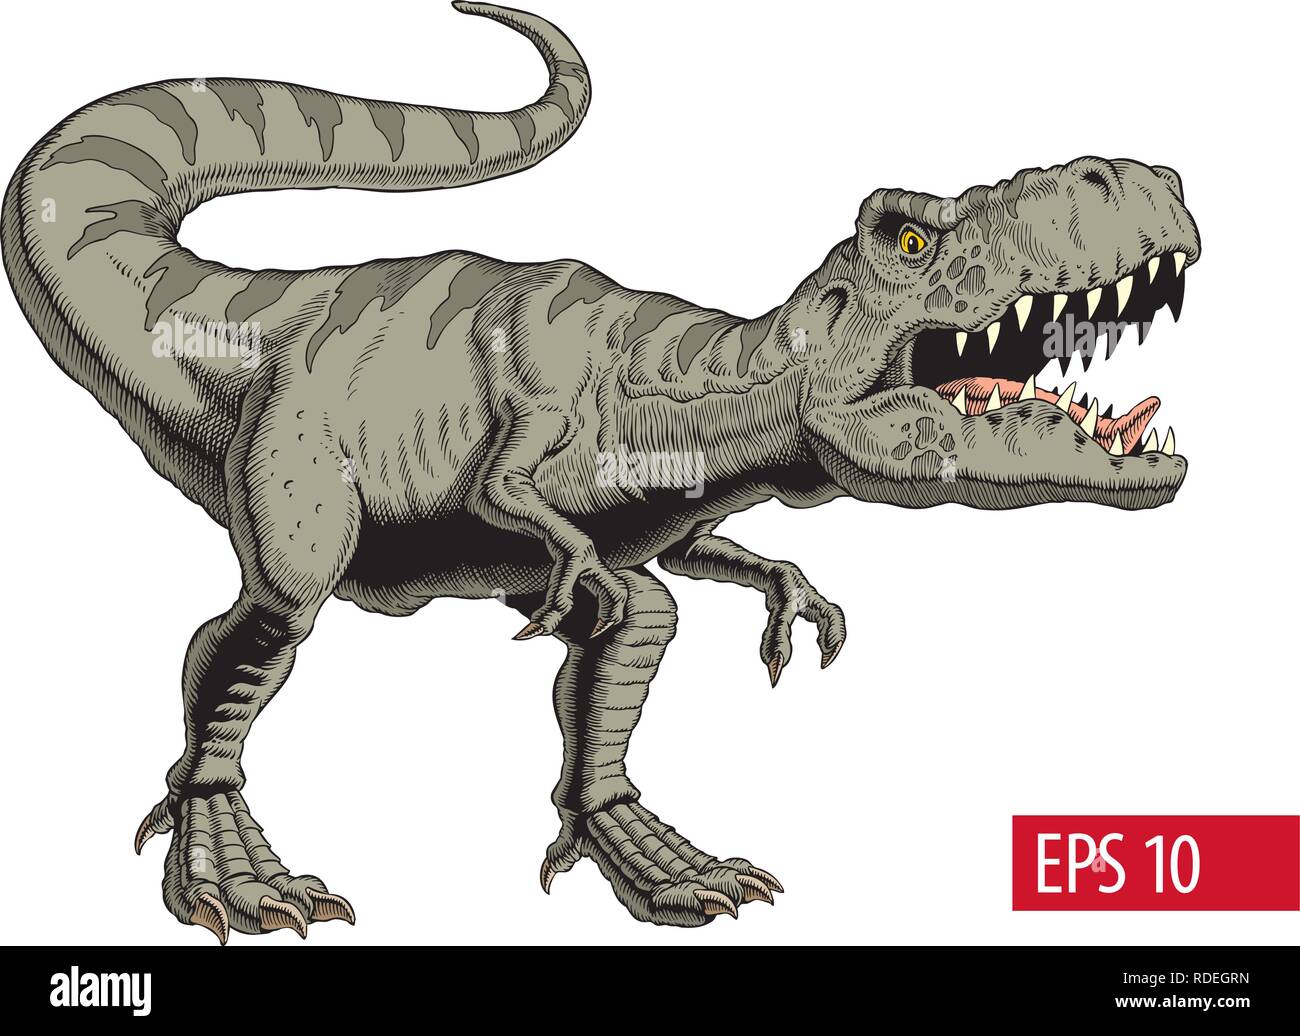 Tyrannosaurus rex or t rex dinosaur isolated on white. Vector illustration. Stock Vector